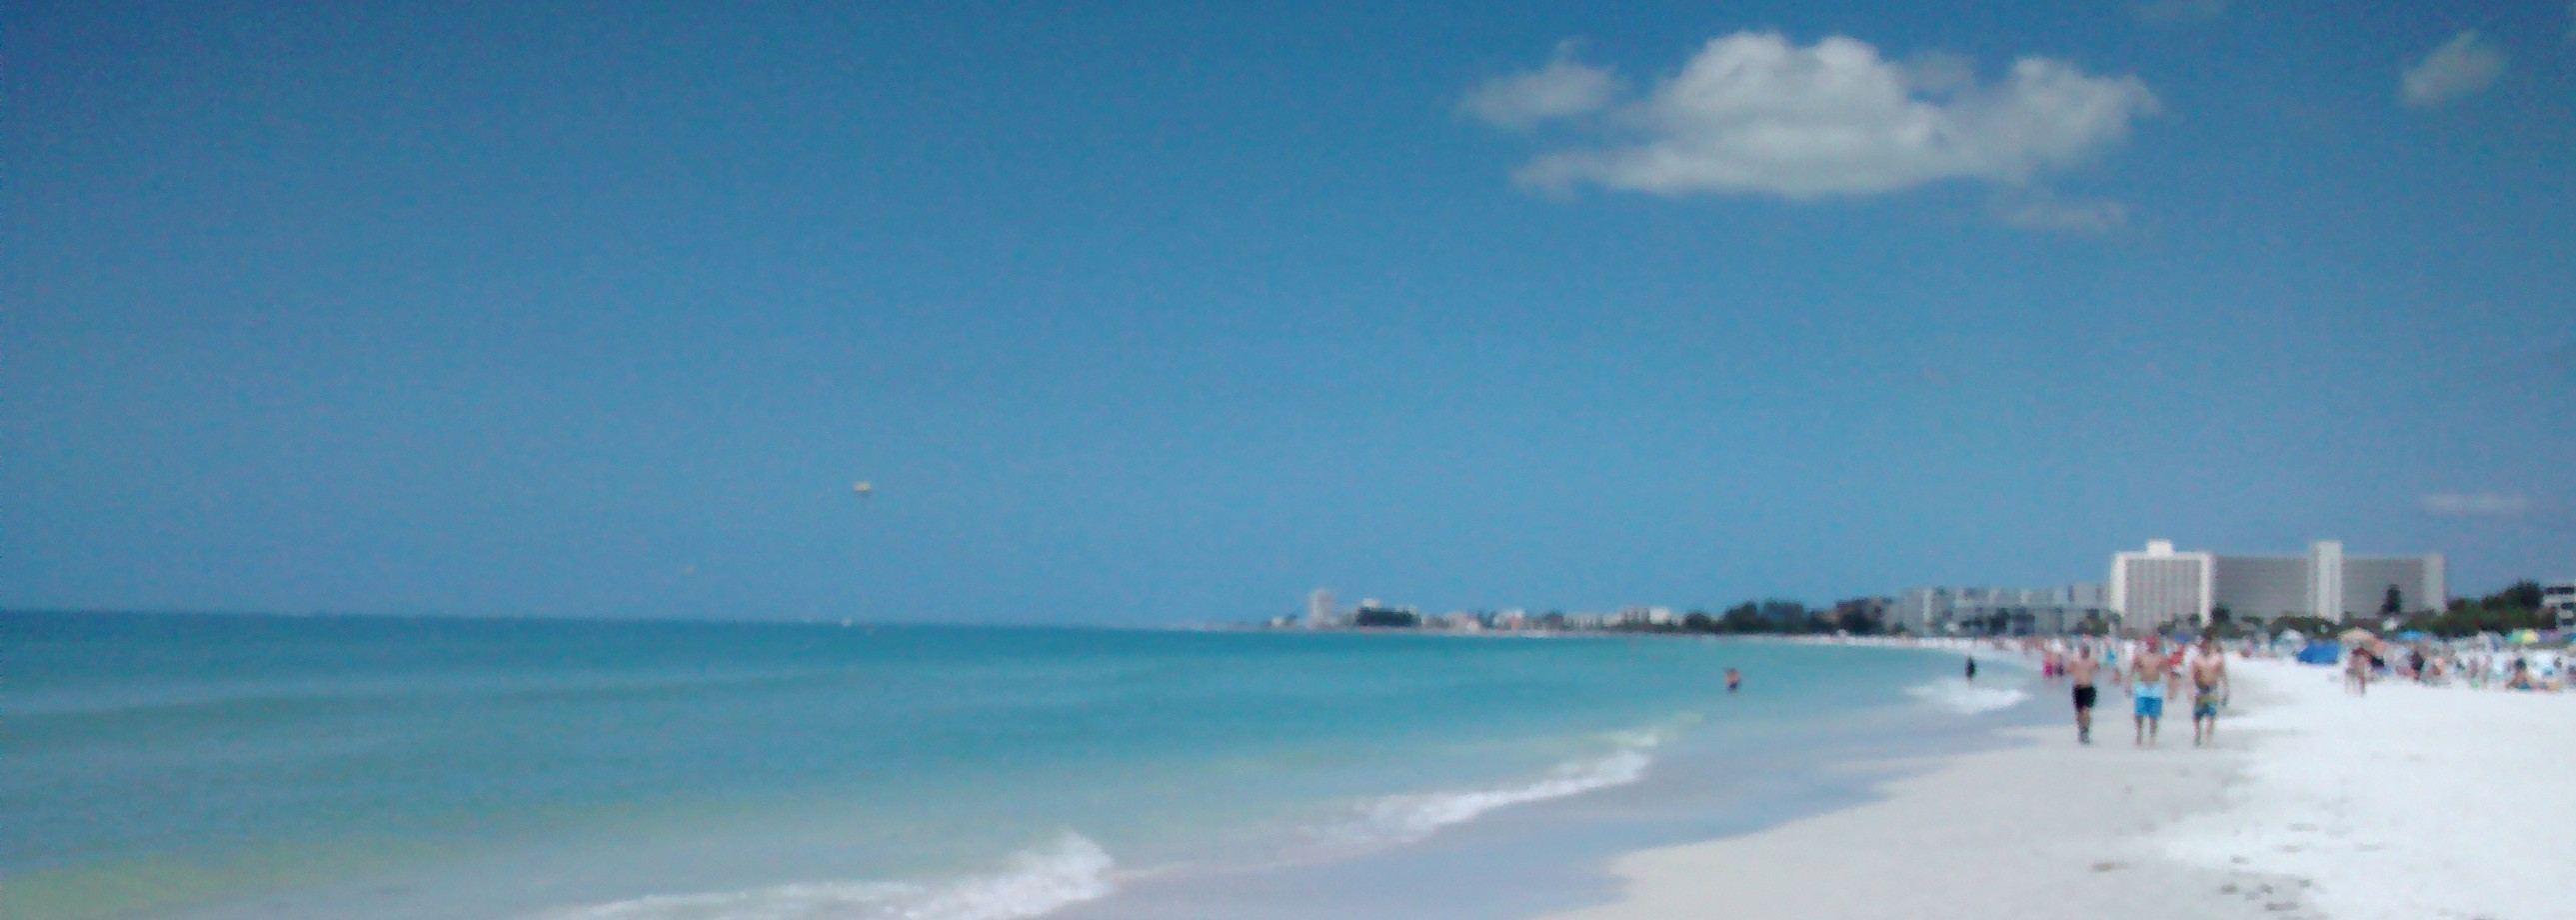 Siesta Key Beach Condo & Villa Vacation Rentals